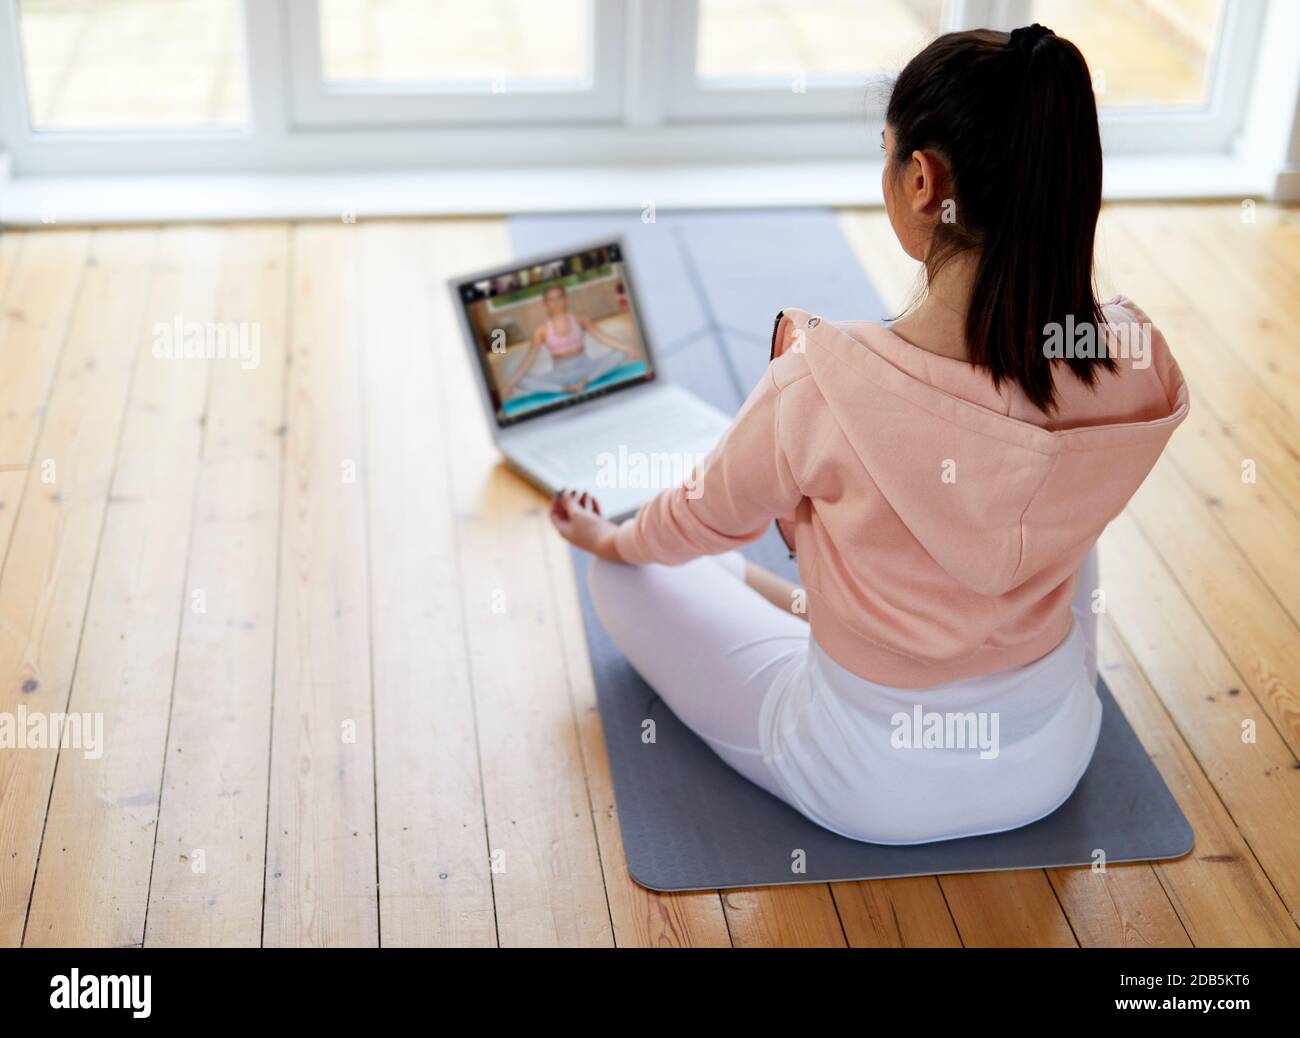 Frau trainieren auf Online-Workout-Programm Stockfoto